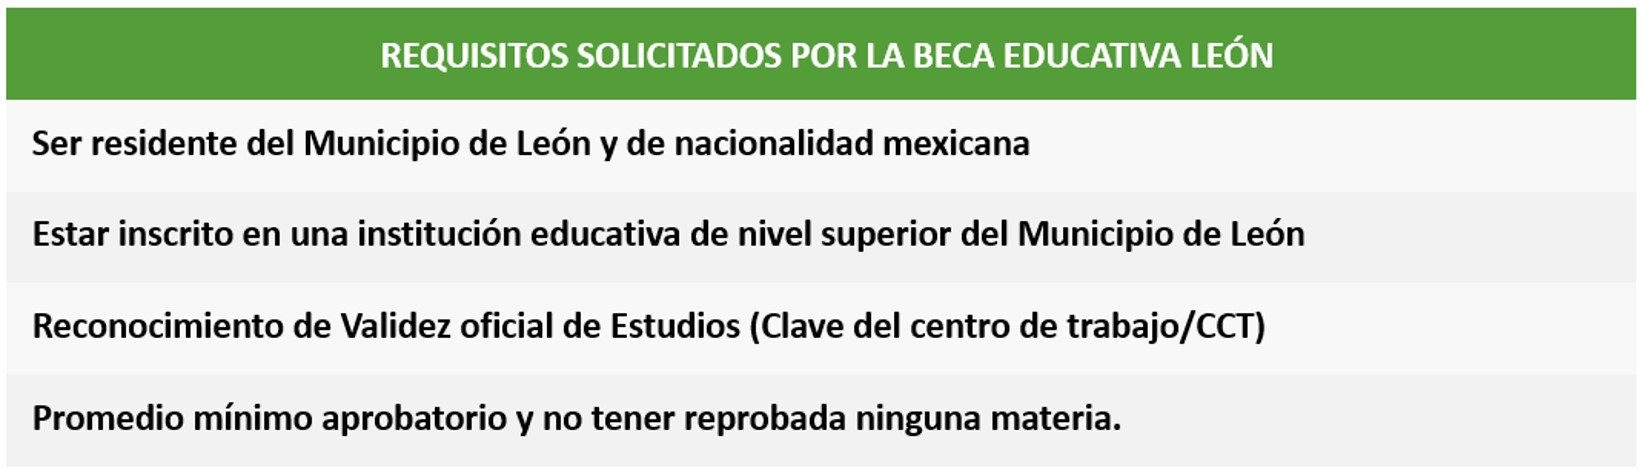 Requisitos solicitados por la Beca Educativa de León 